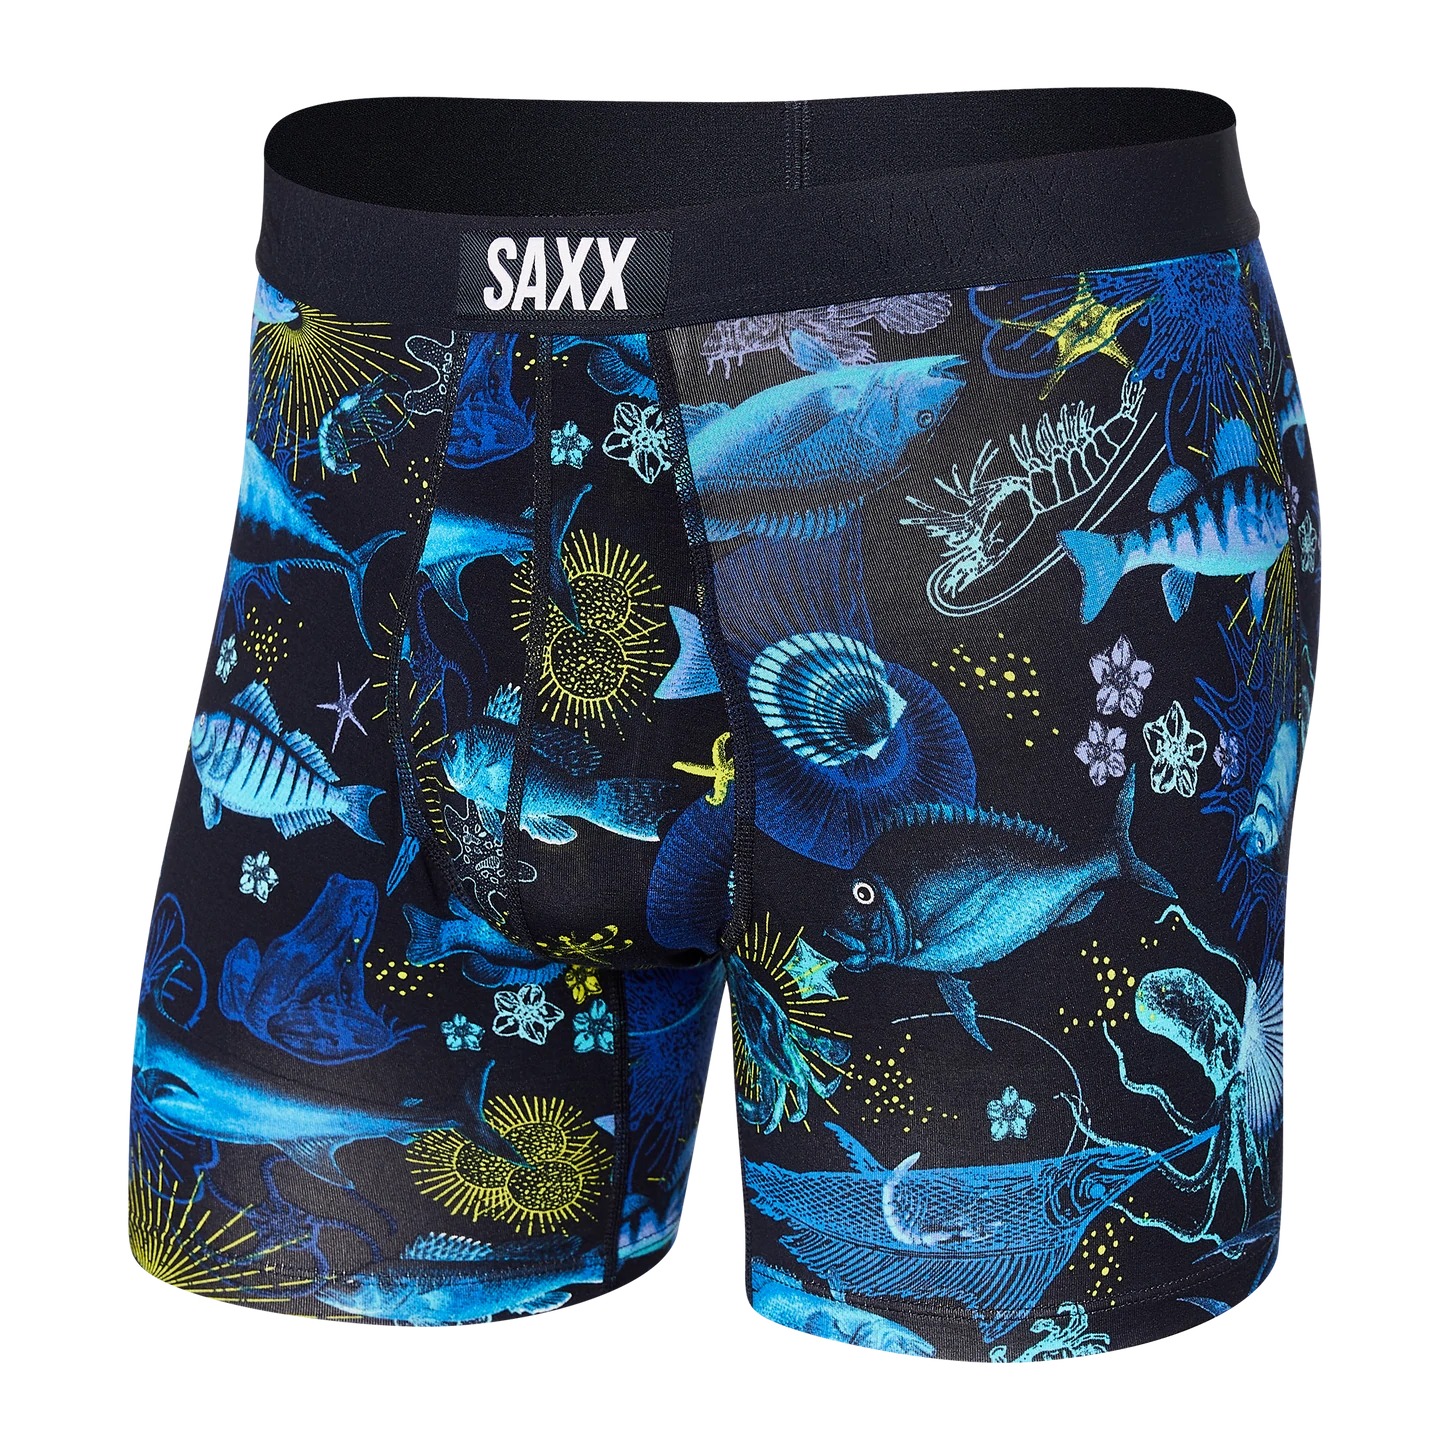 Saxx Ultra Boxer Brief-Undersea Garden - Dark Ink - Uplift